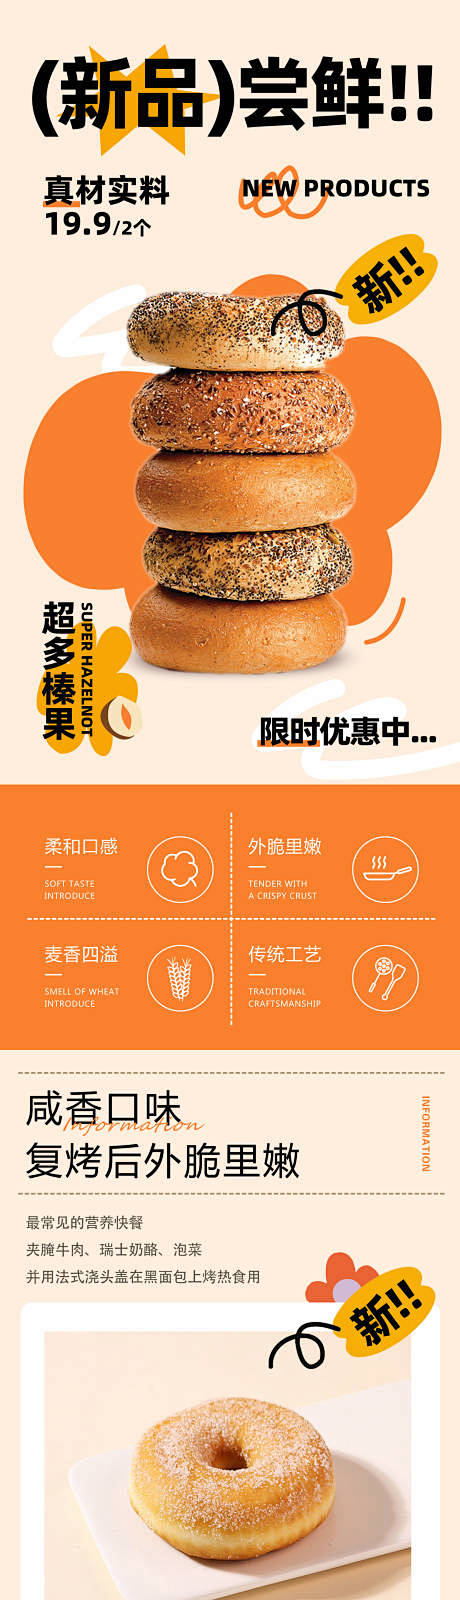 面包烘焙新品长图海报-源文件分享-ywj...